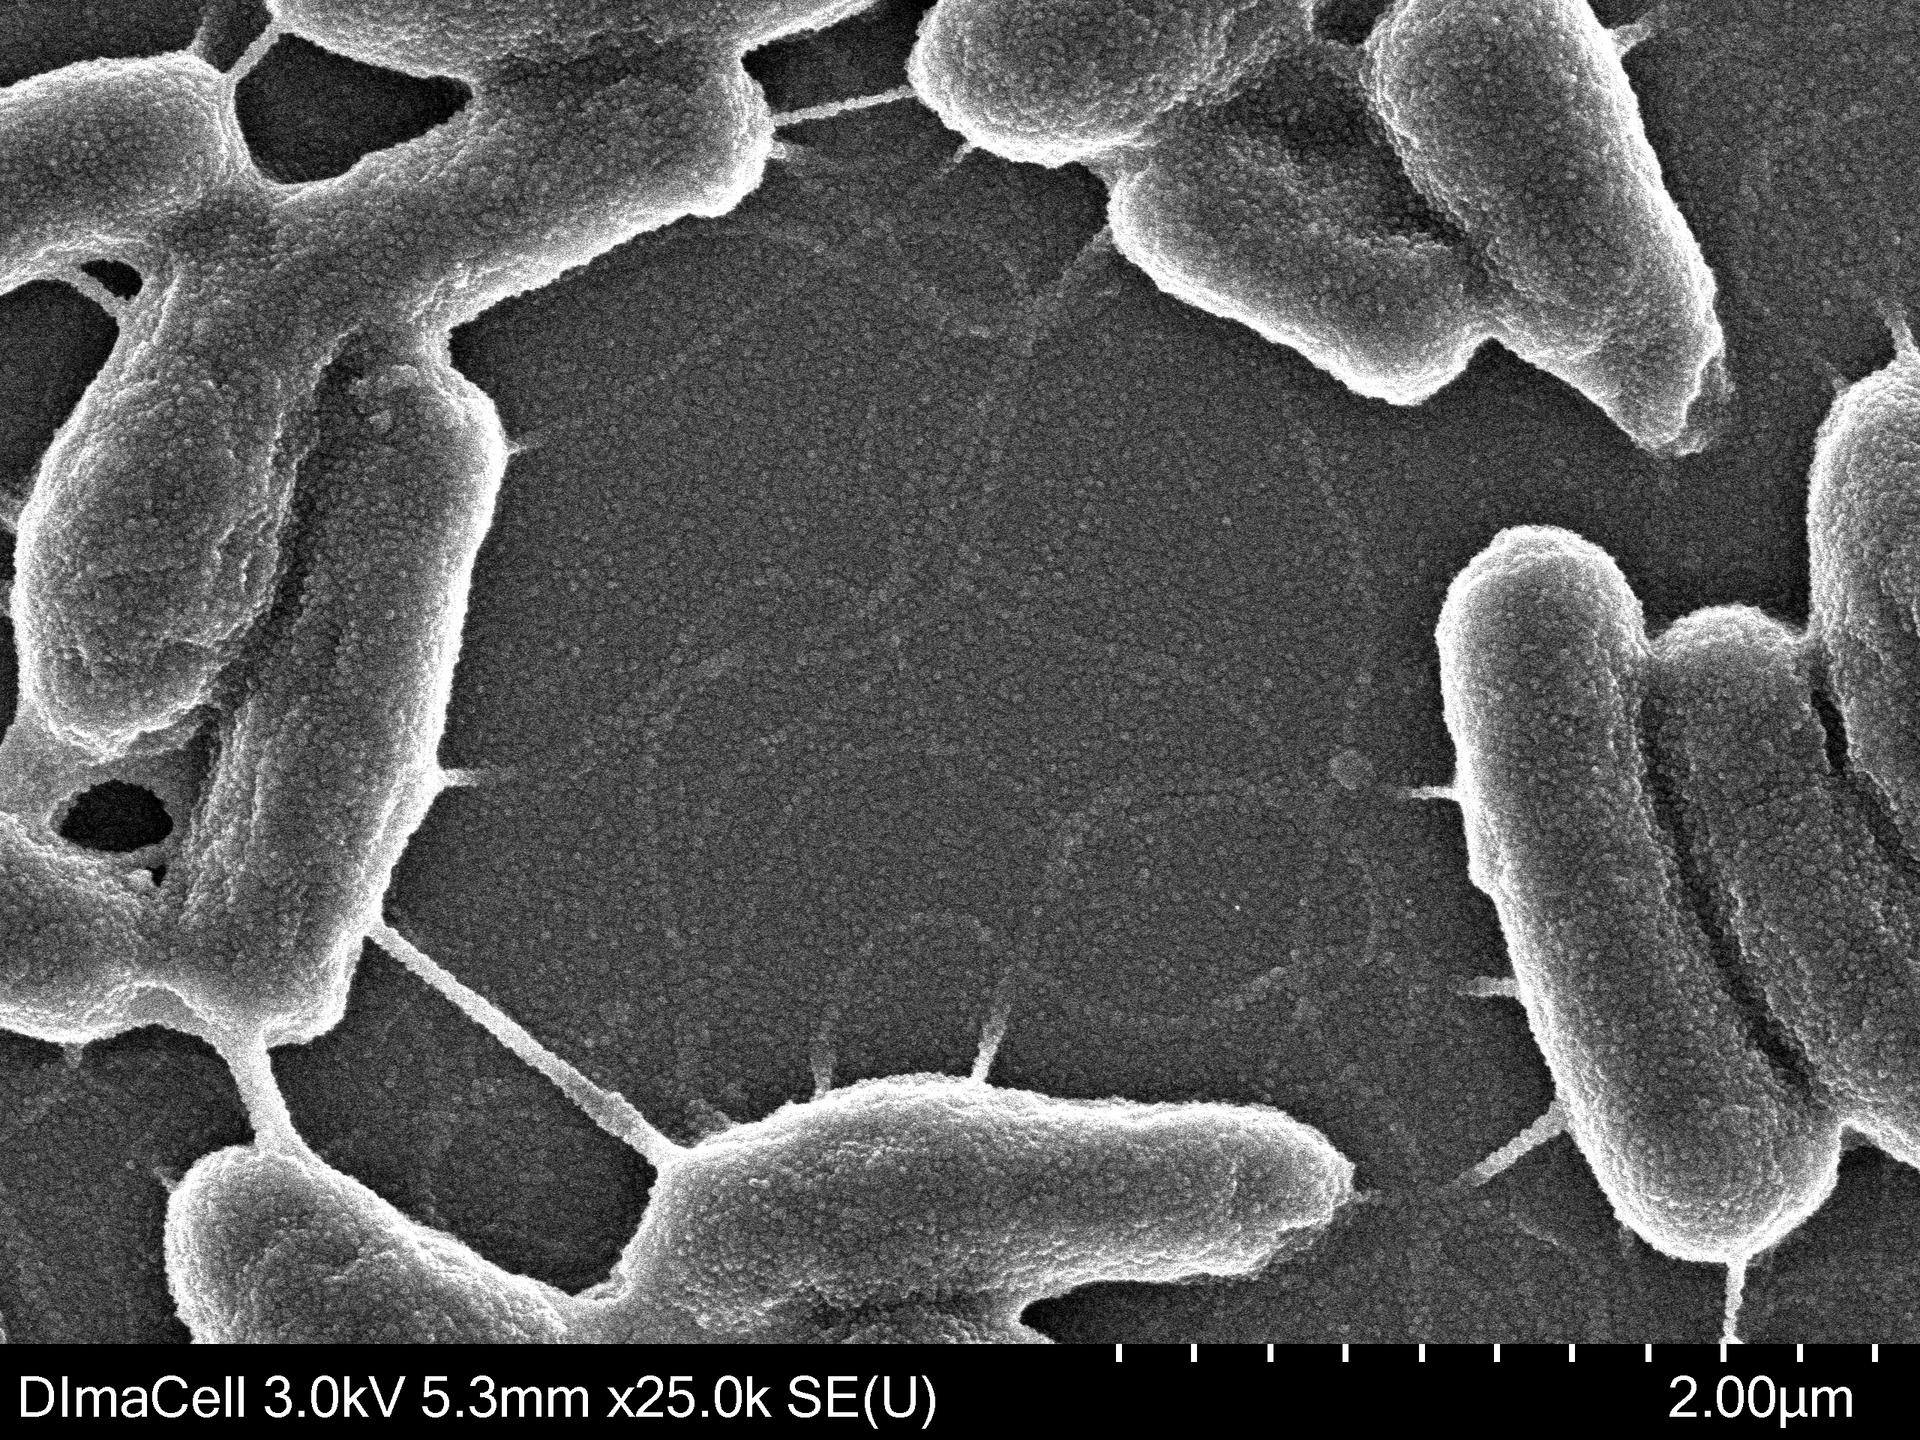 Images de bactéries du sol Chelatobacter heinzi obtenue par MET